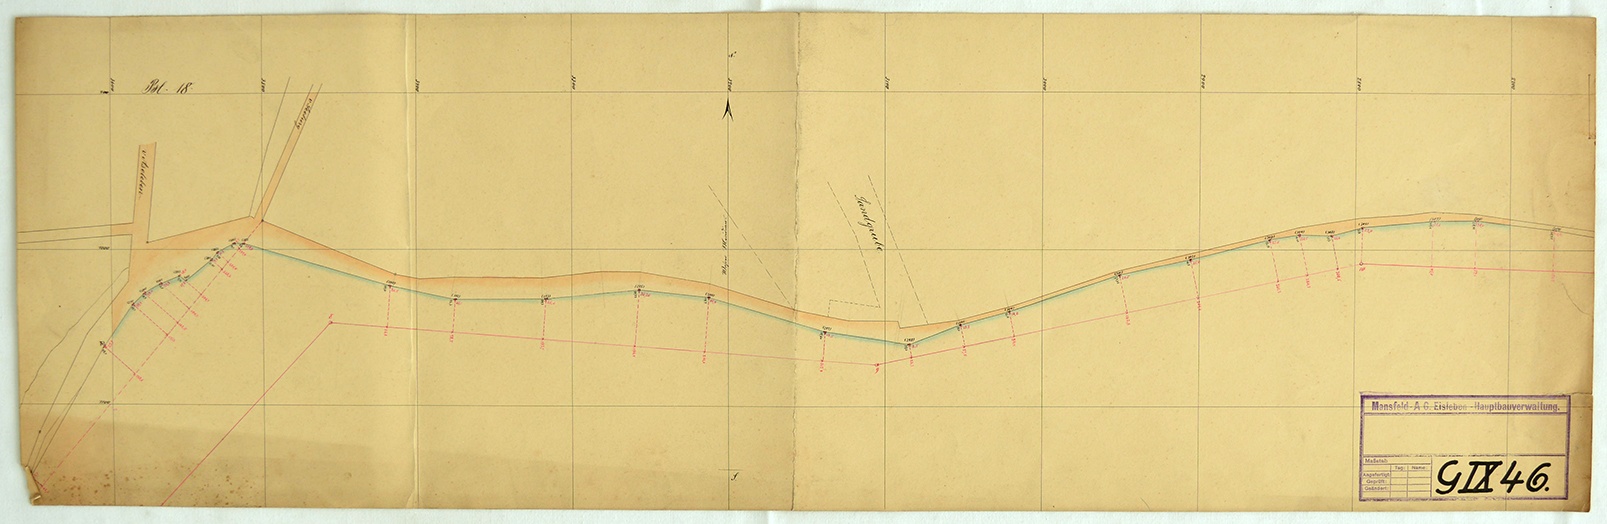 Profilzeichnung vom Salzigen See. Blatt 18. (Mansfeld-Museum im Humboldt-Schloss CC BY-NC-SA)